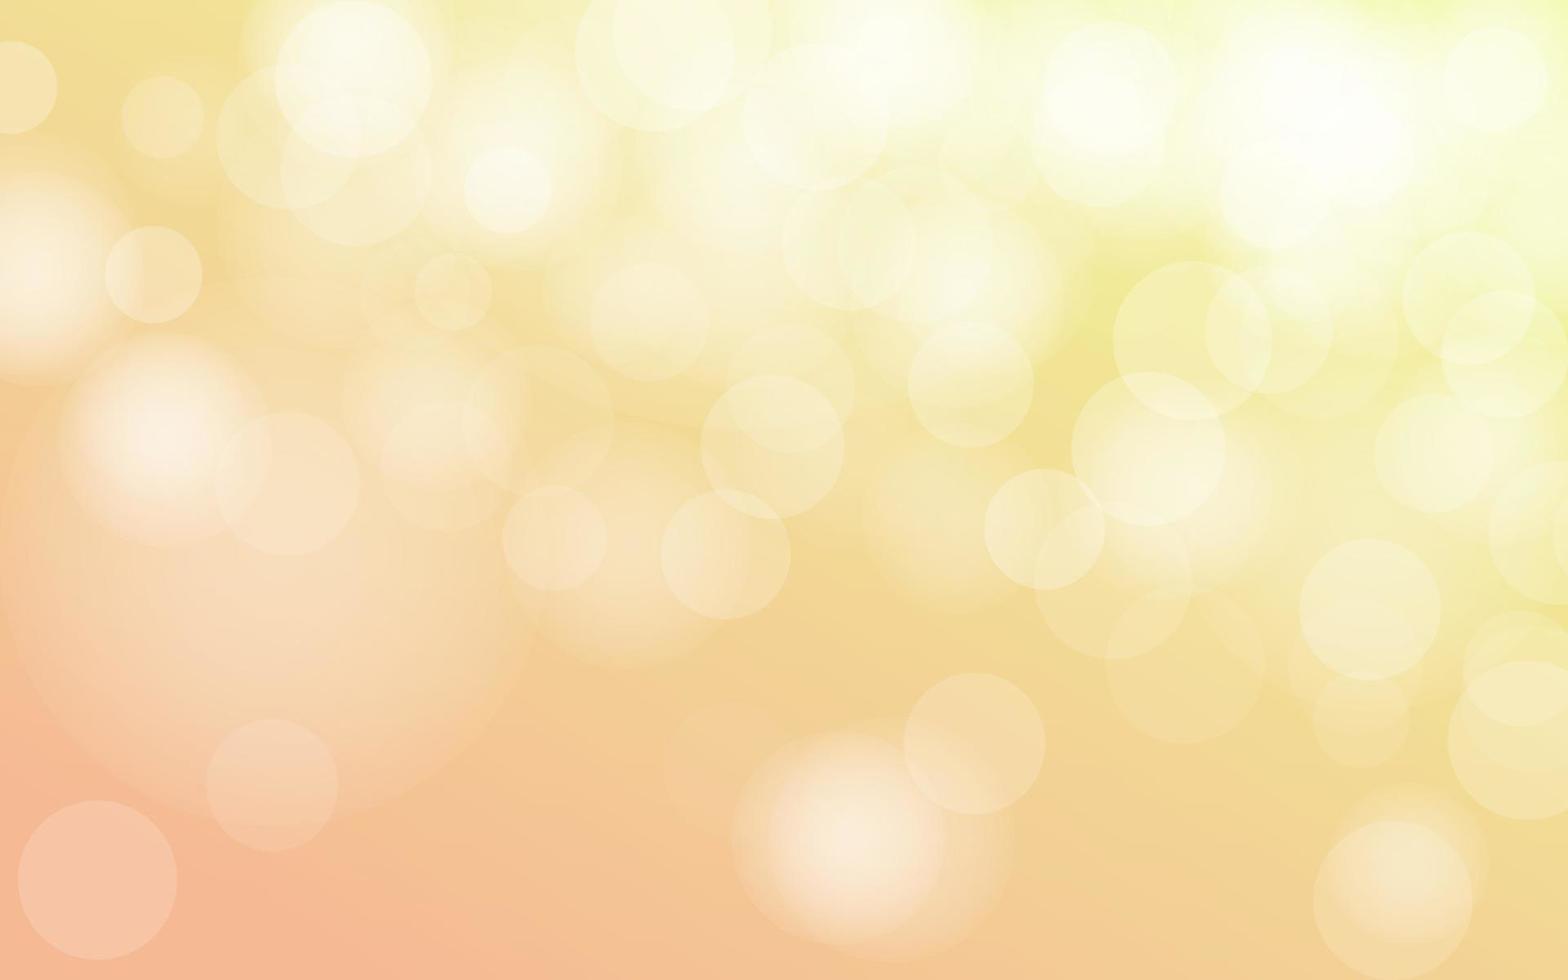 teder geel en oranje luxe bokeh zacht licht abstract achtergrond, vector eps 10 illustratie bokeh deeltjes, achtergrond decoratie